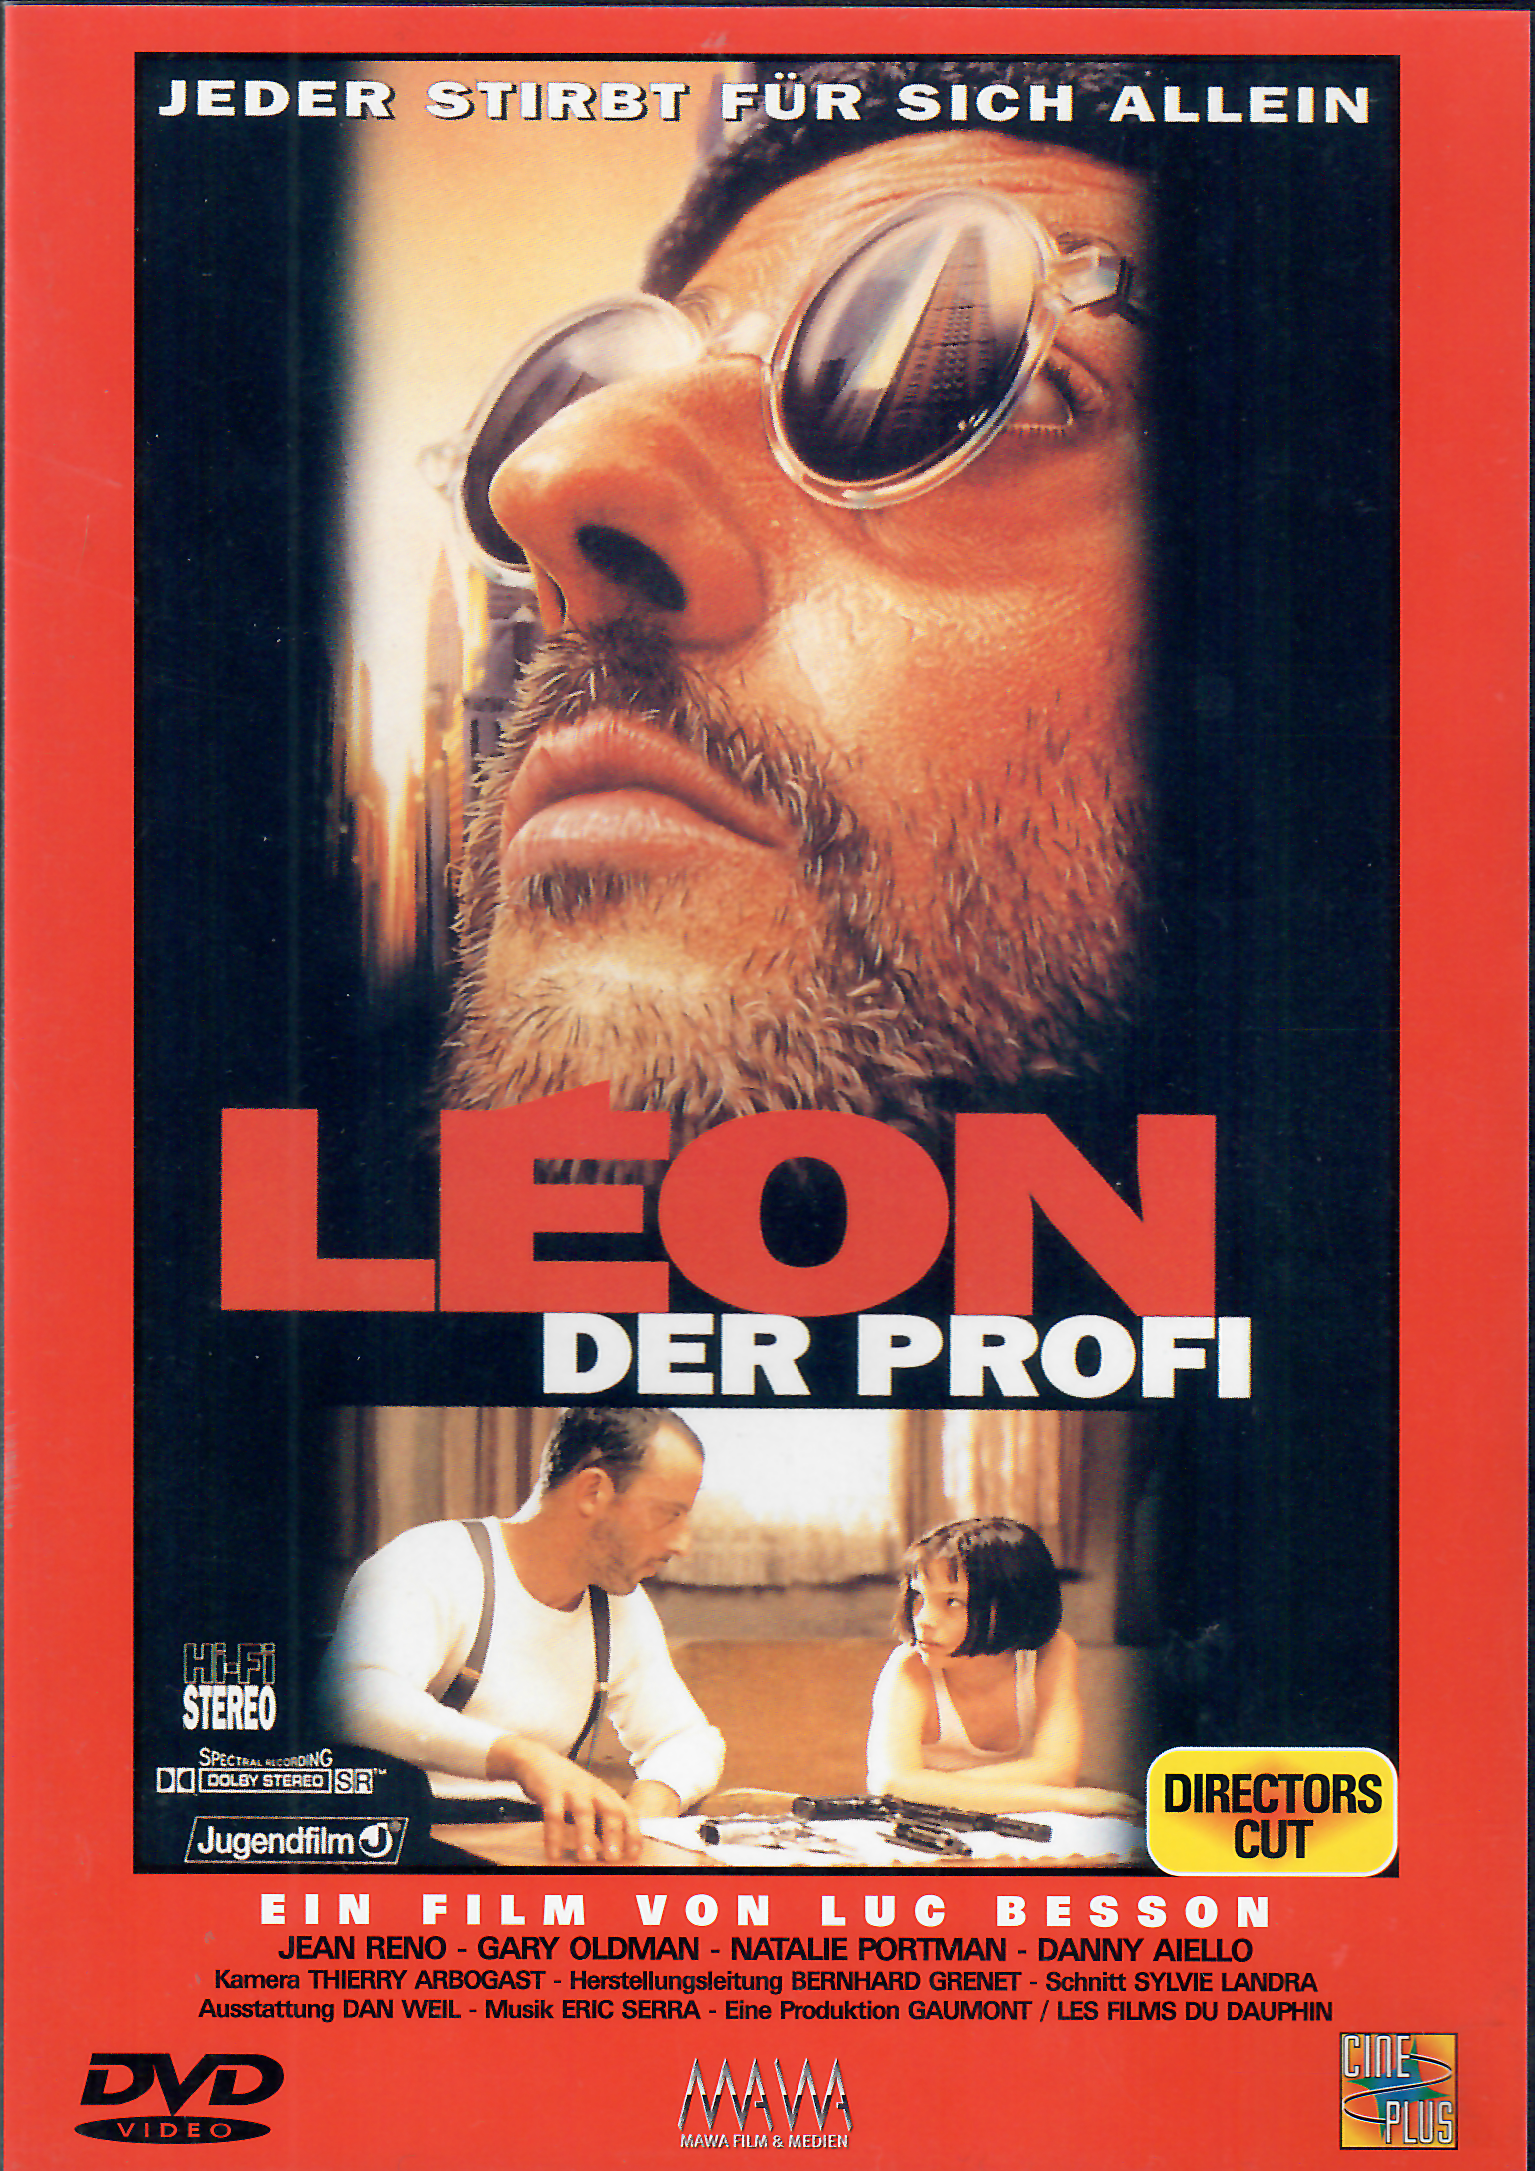 DVD Léon der Profi - Jeder stirbt für sich allein - Directors cut